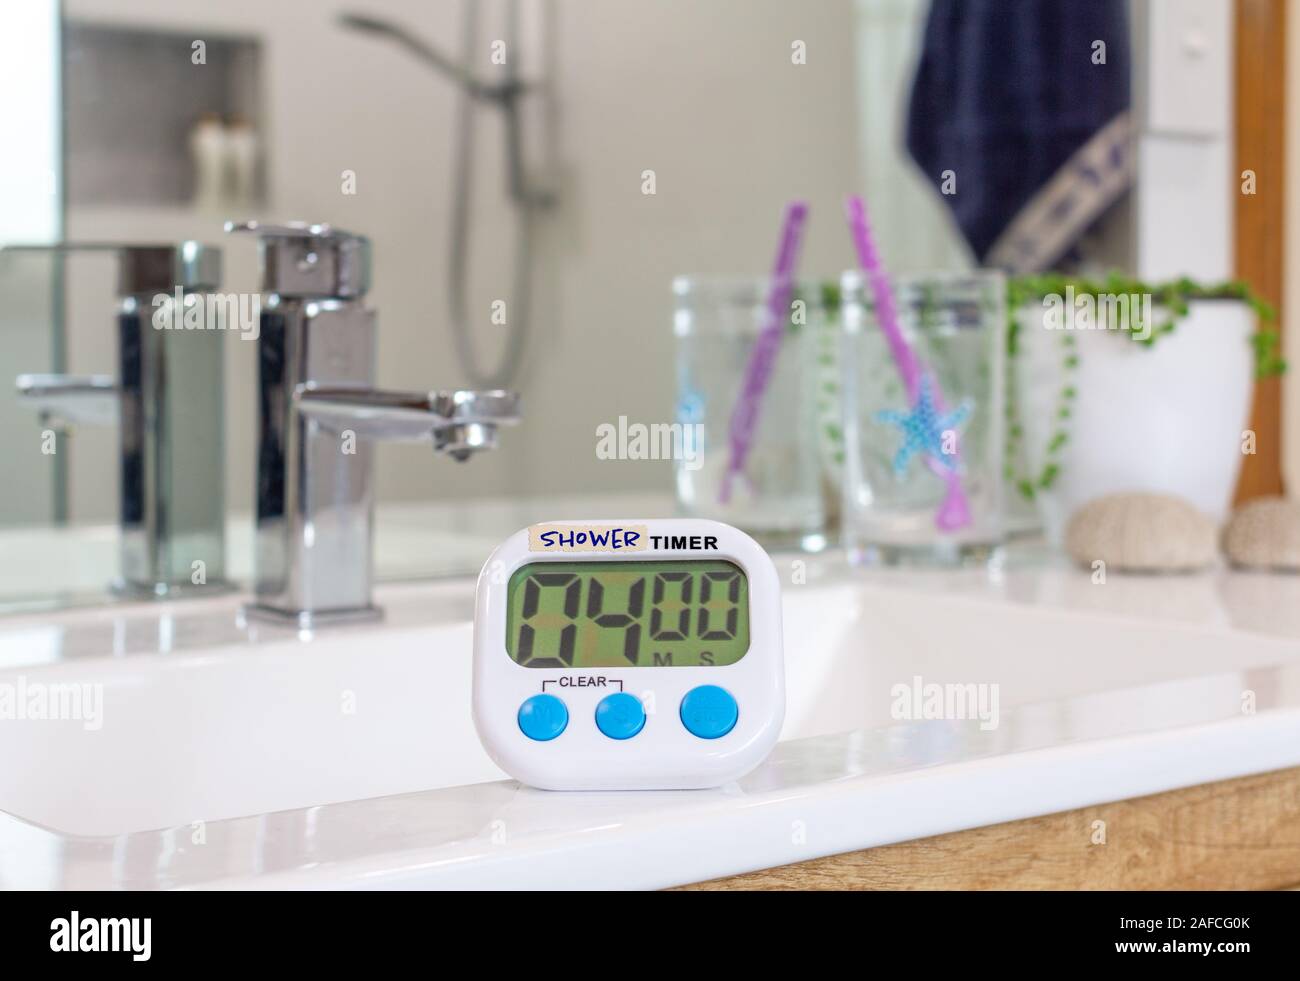 Temporizador de ducha casero en el baño, usada para duchas de tiempo debido a las restricciones de agua causada por condiciones de sequía a través del cambio climático Foto de stock